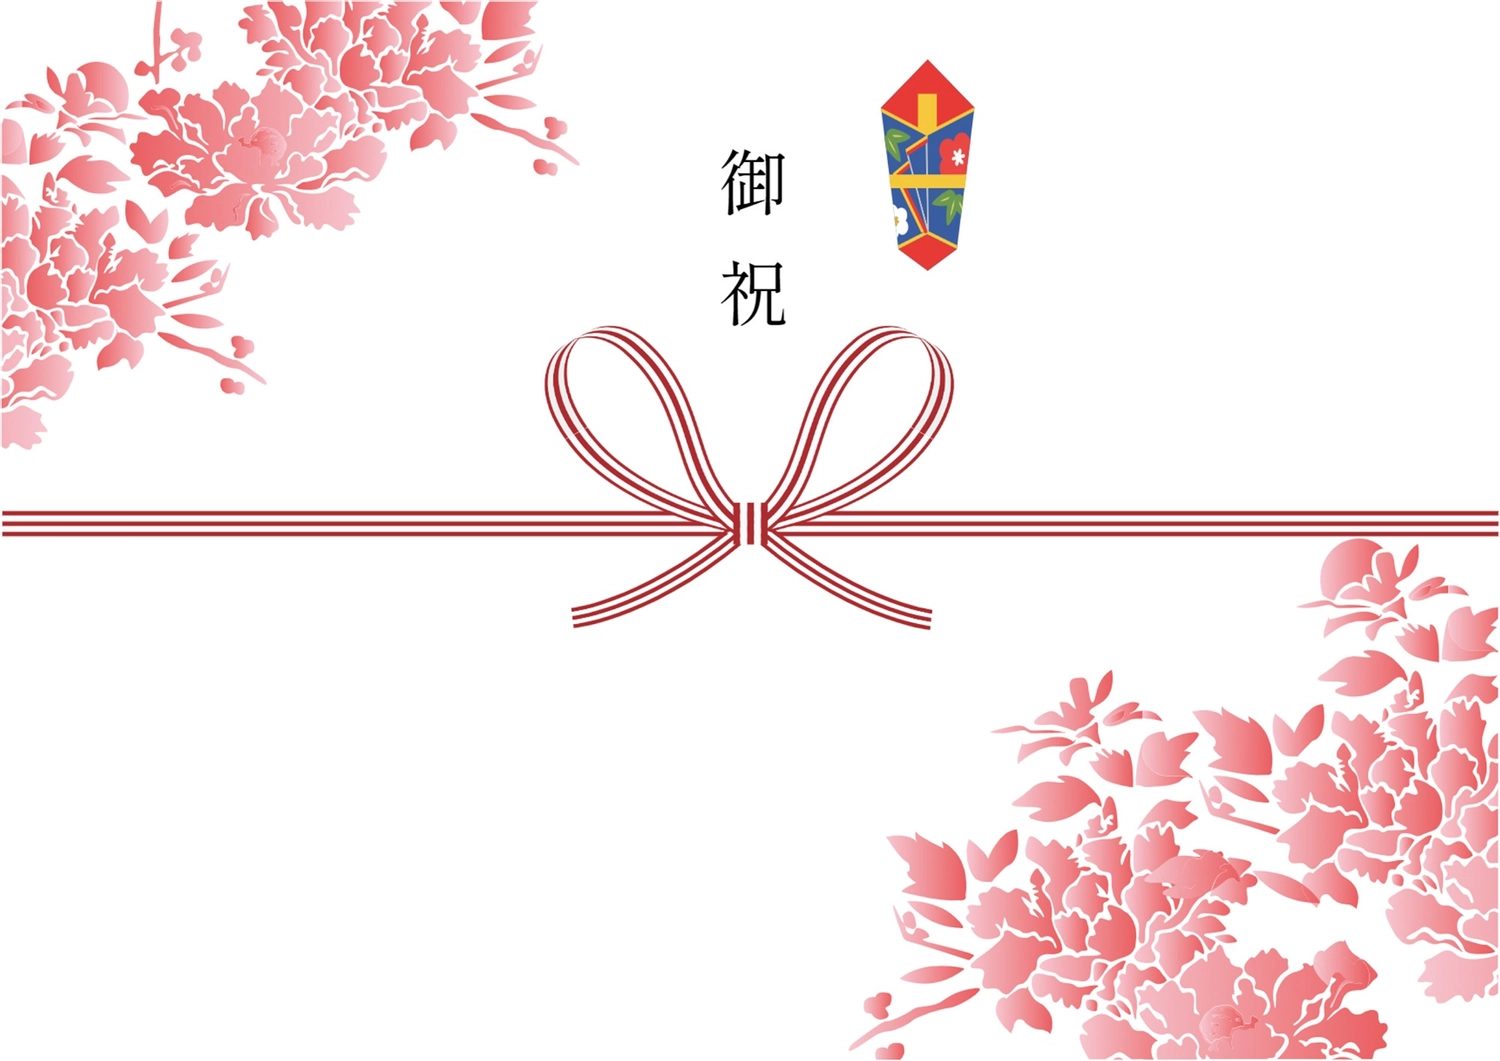 赤の花柄の入った御祝, noshigami, gift-giving, Opening, Sales promotion tool template